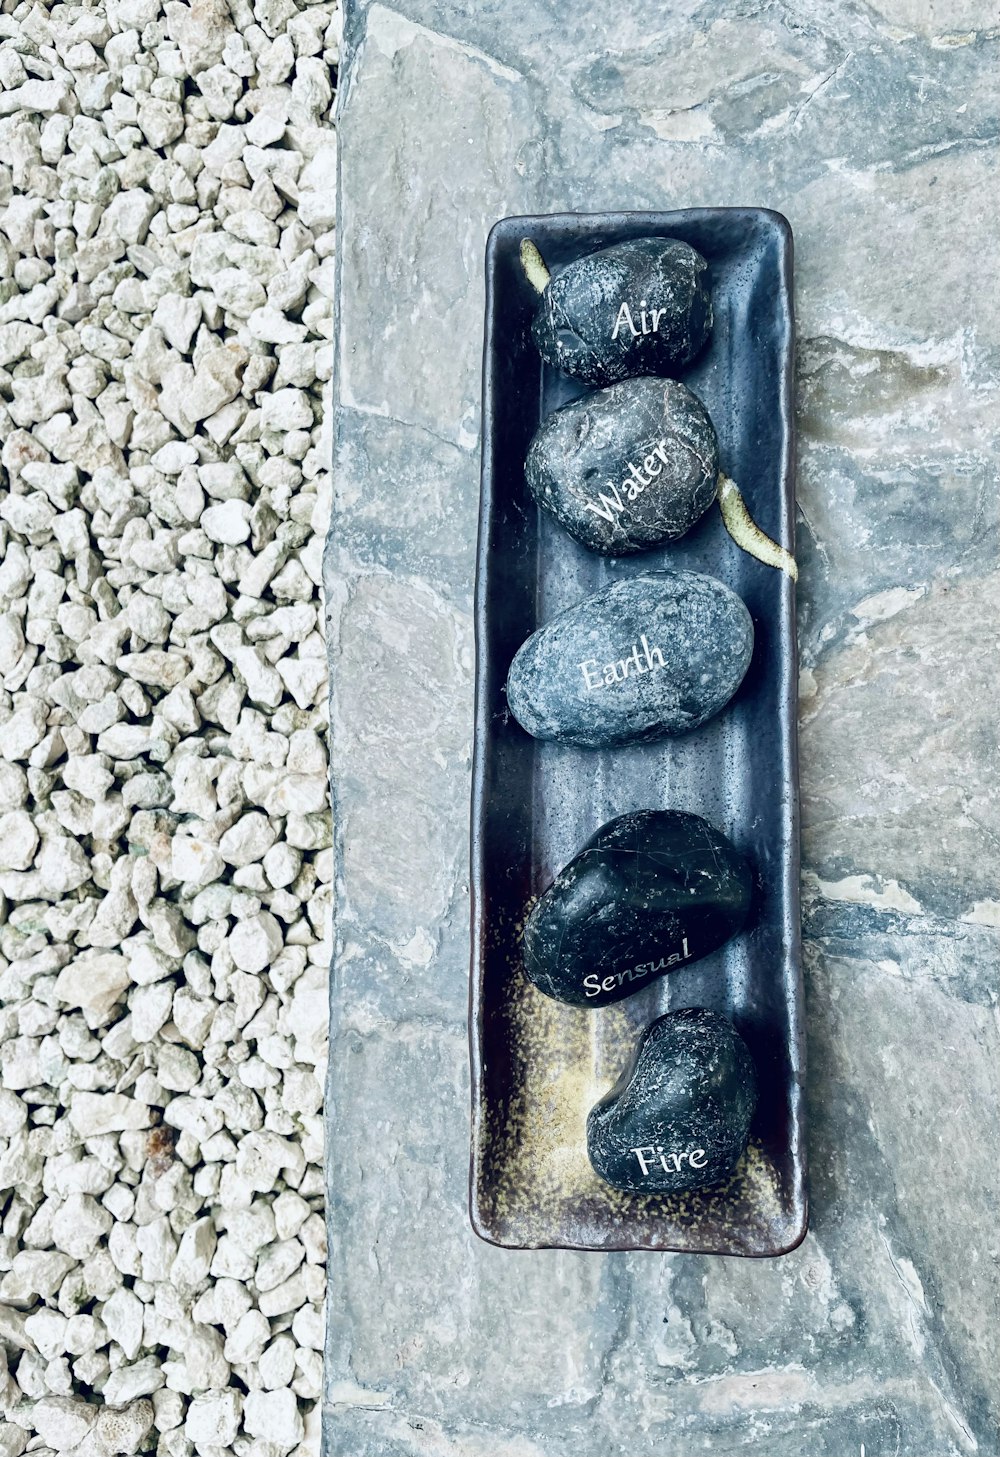 Drei Steine in einem schwarzen Tablett auf einem Steinboden